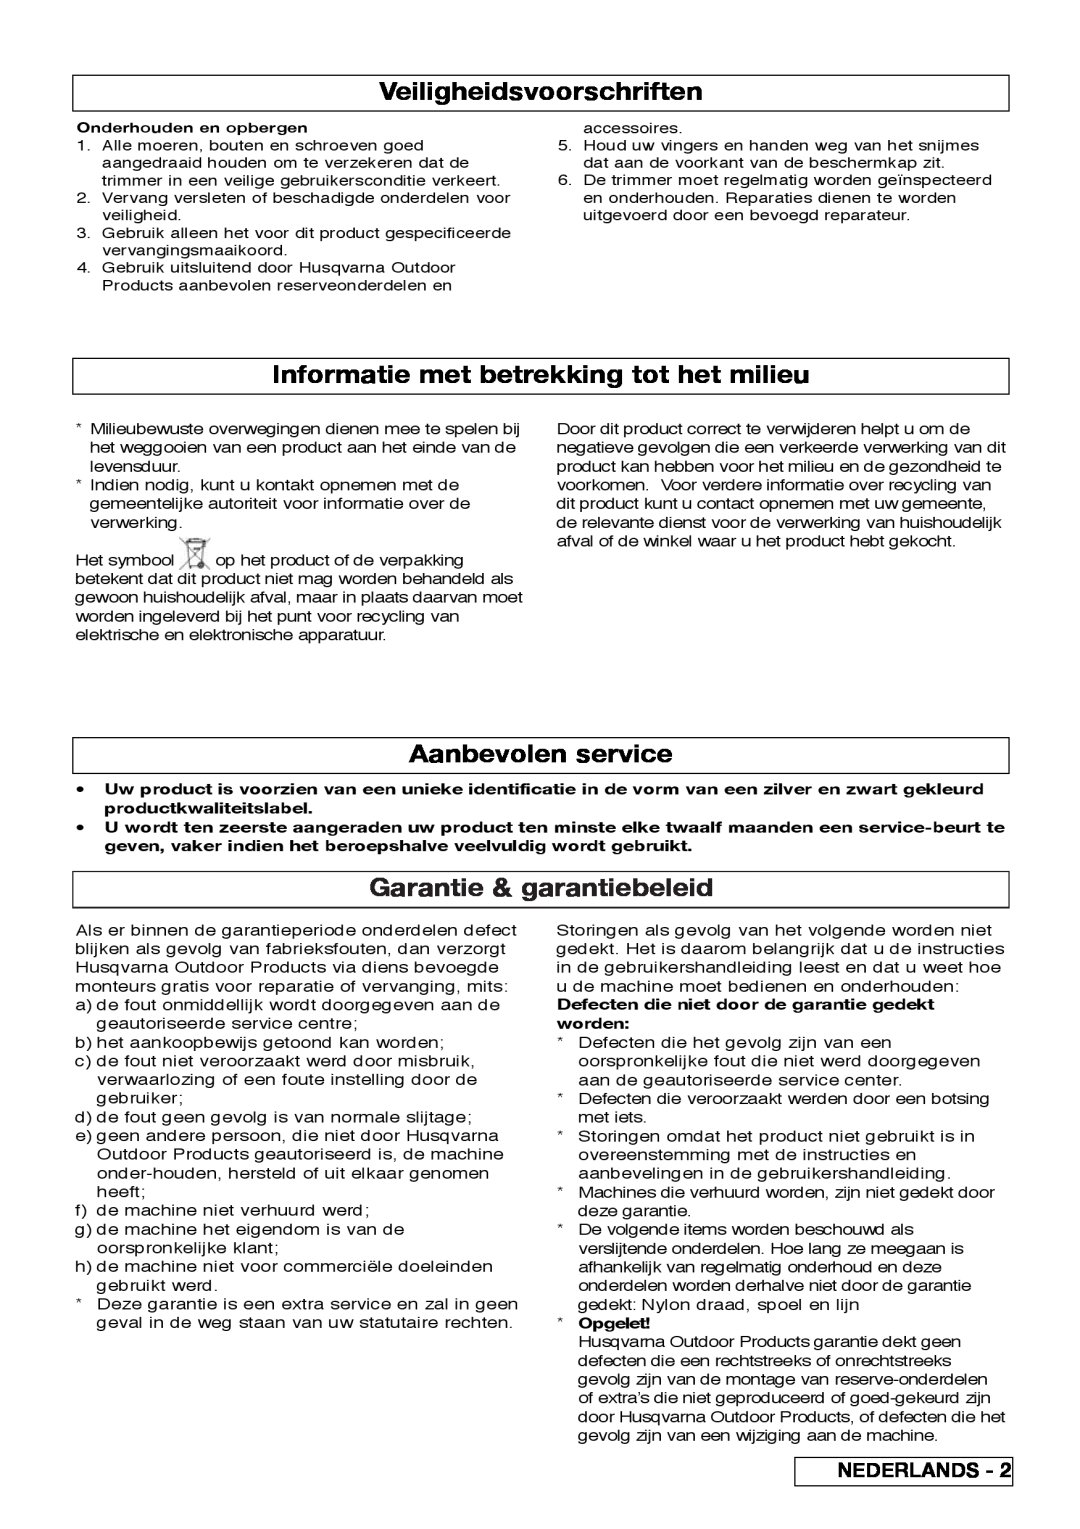 Flymo 800/1000 Veiligheidsvoorschriften, Informatie met betrekking tot het milieu, Aanbevolen service, Nederlands, Opgelet 